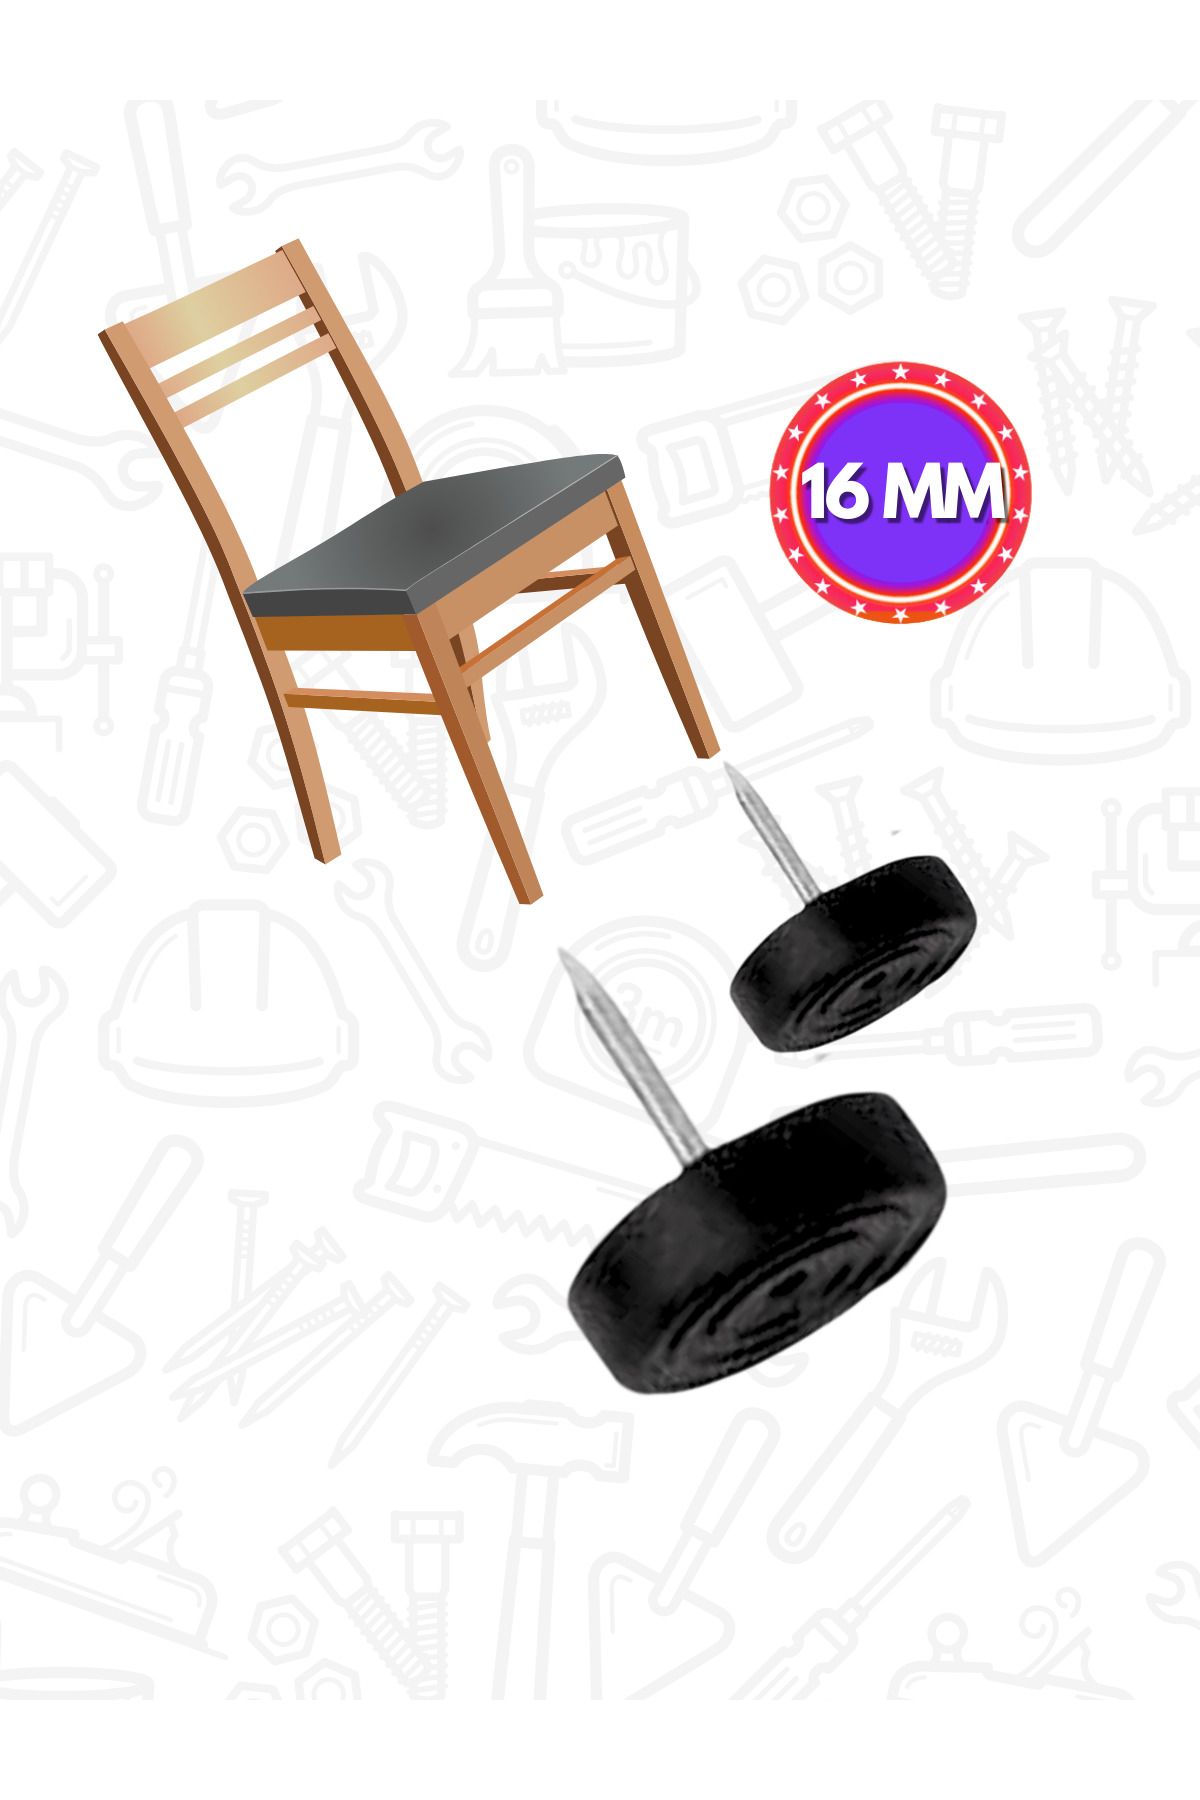 Dünya Sünger Çivili Papuç Masa Sandalye Altına Kaydırmaz Zemin Koruyucu 25 Adet Siyah Papuç 16 mm